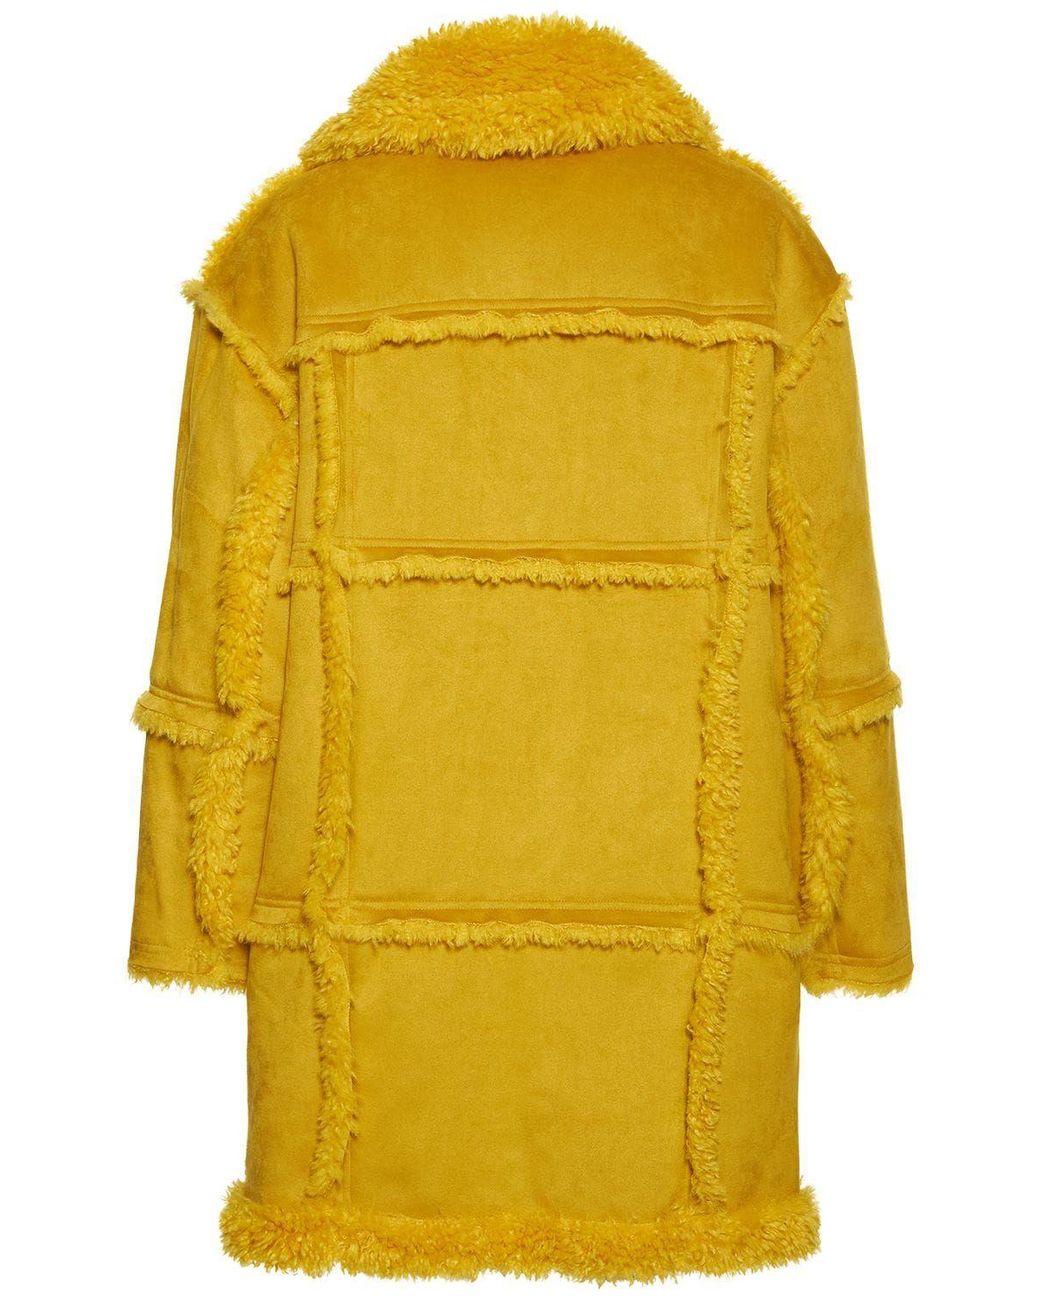 日本最安 新品 Reversible Faux Shearling Dress Coat www.itacr.com